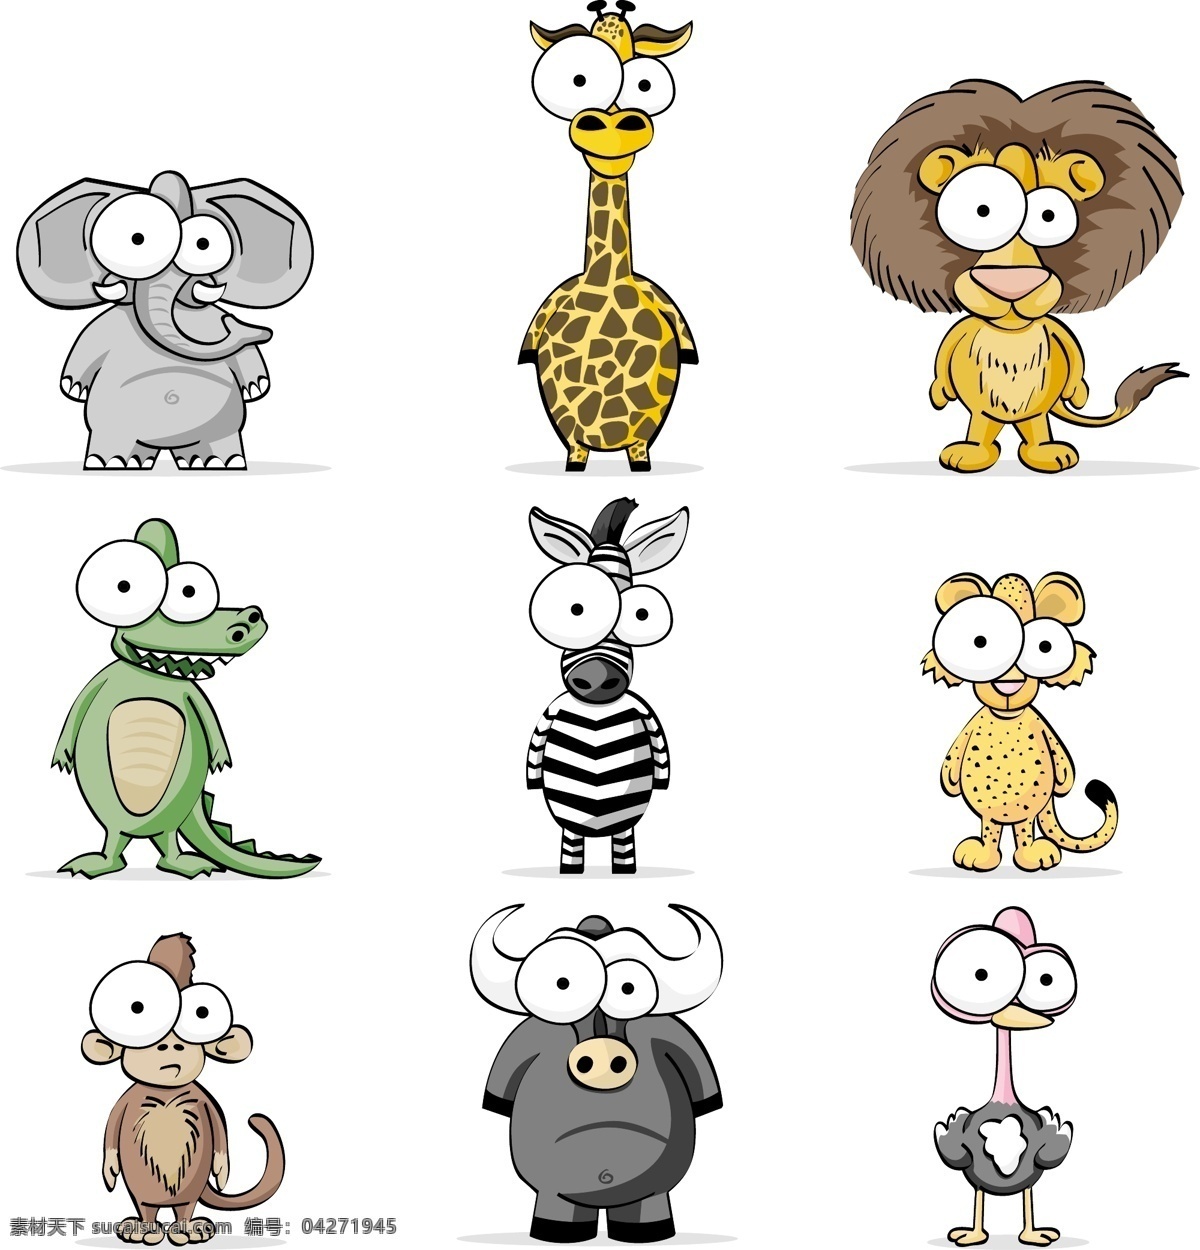 适量插画 动物插画 大象 河马 恐龙 鸵鸟 狮子 猴子 长颈鹿 插画设计 矢量素材 动漫动画